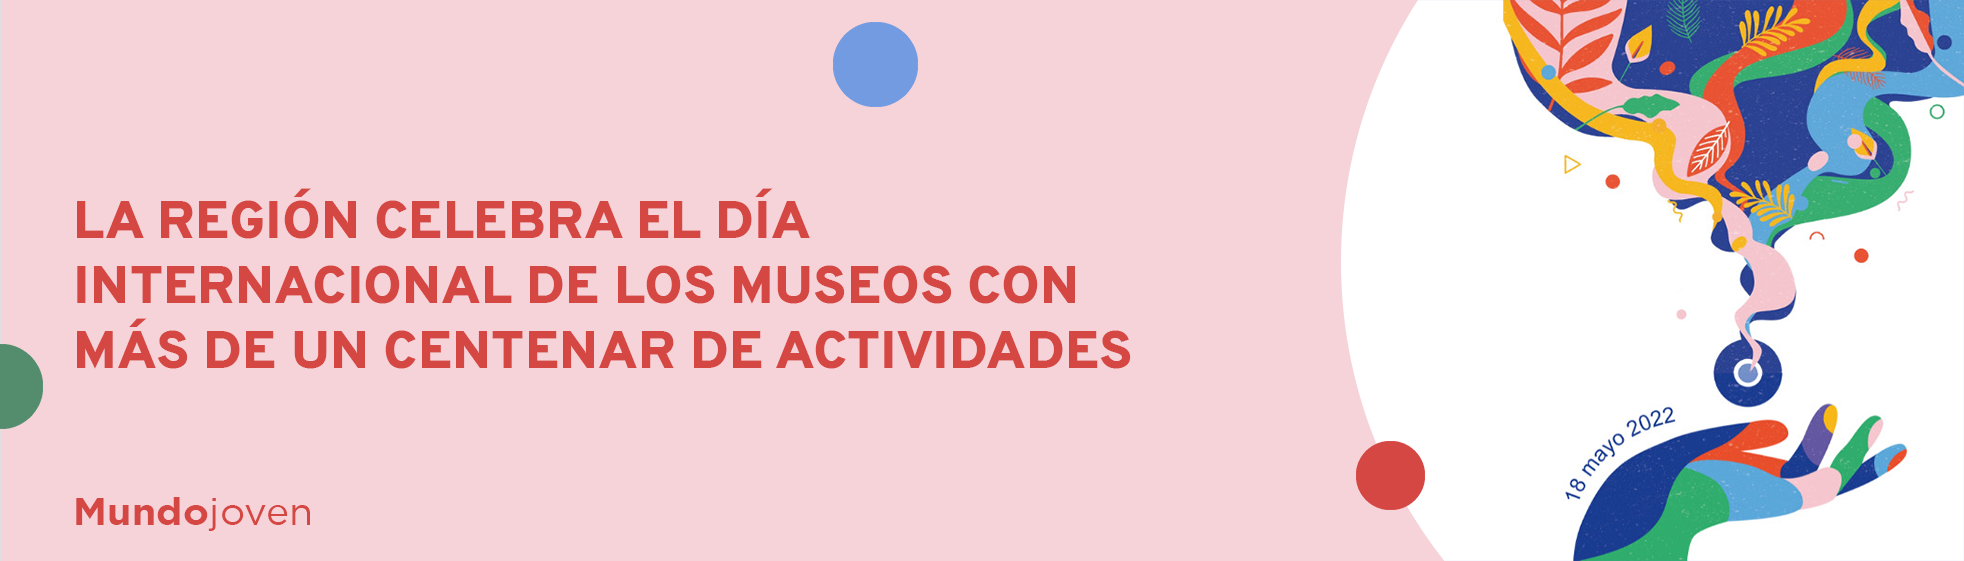 La Región celebra el Día Internacional de los Museos con más de un centenar de actividades